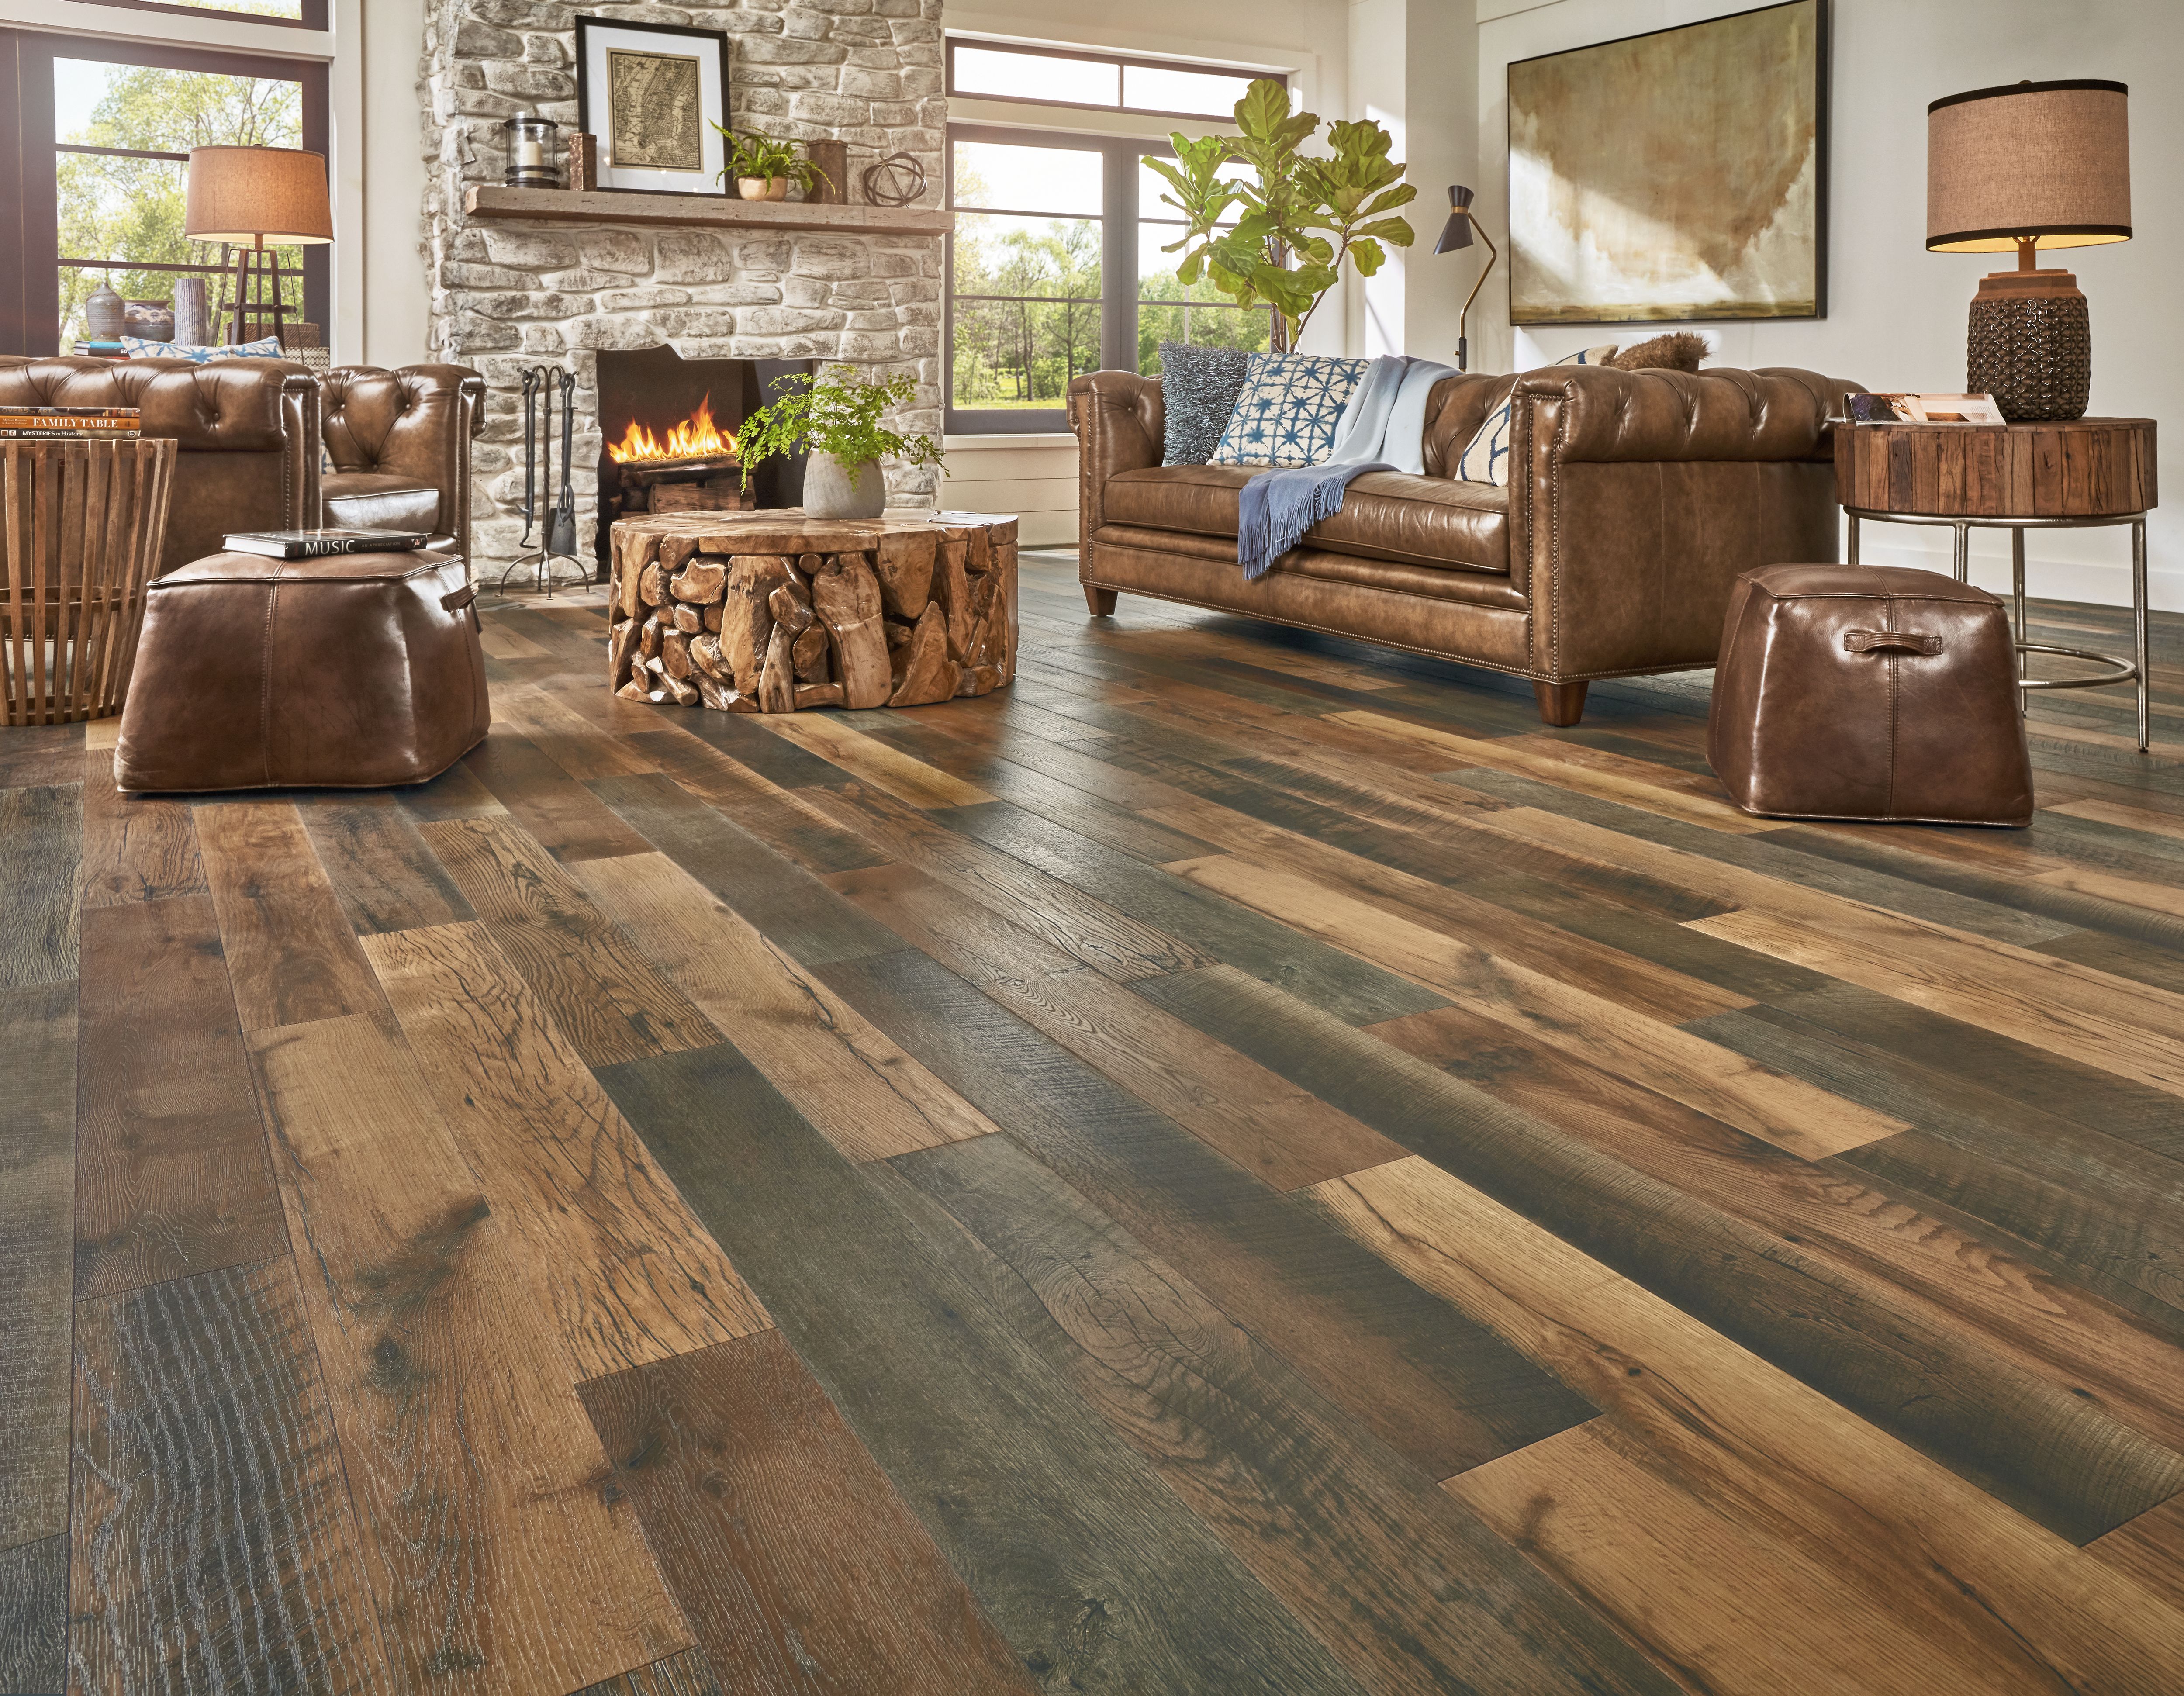 Find Pergo Flooring For You, Pergo Or Laminate Flooring